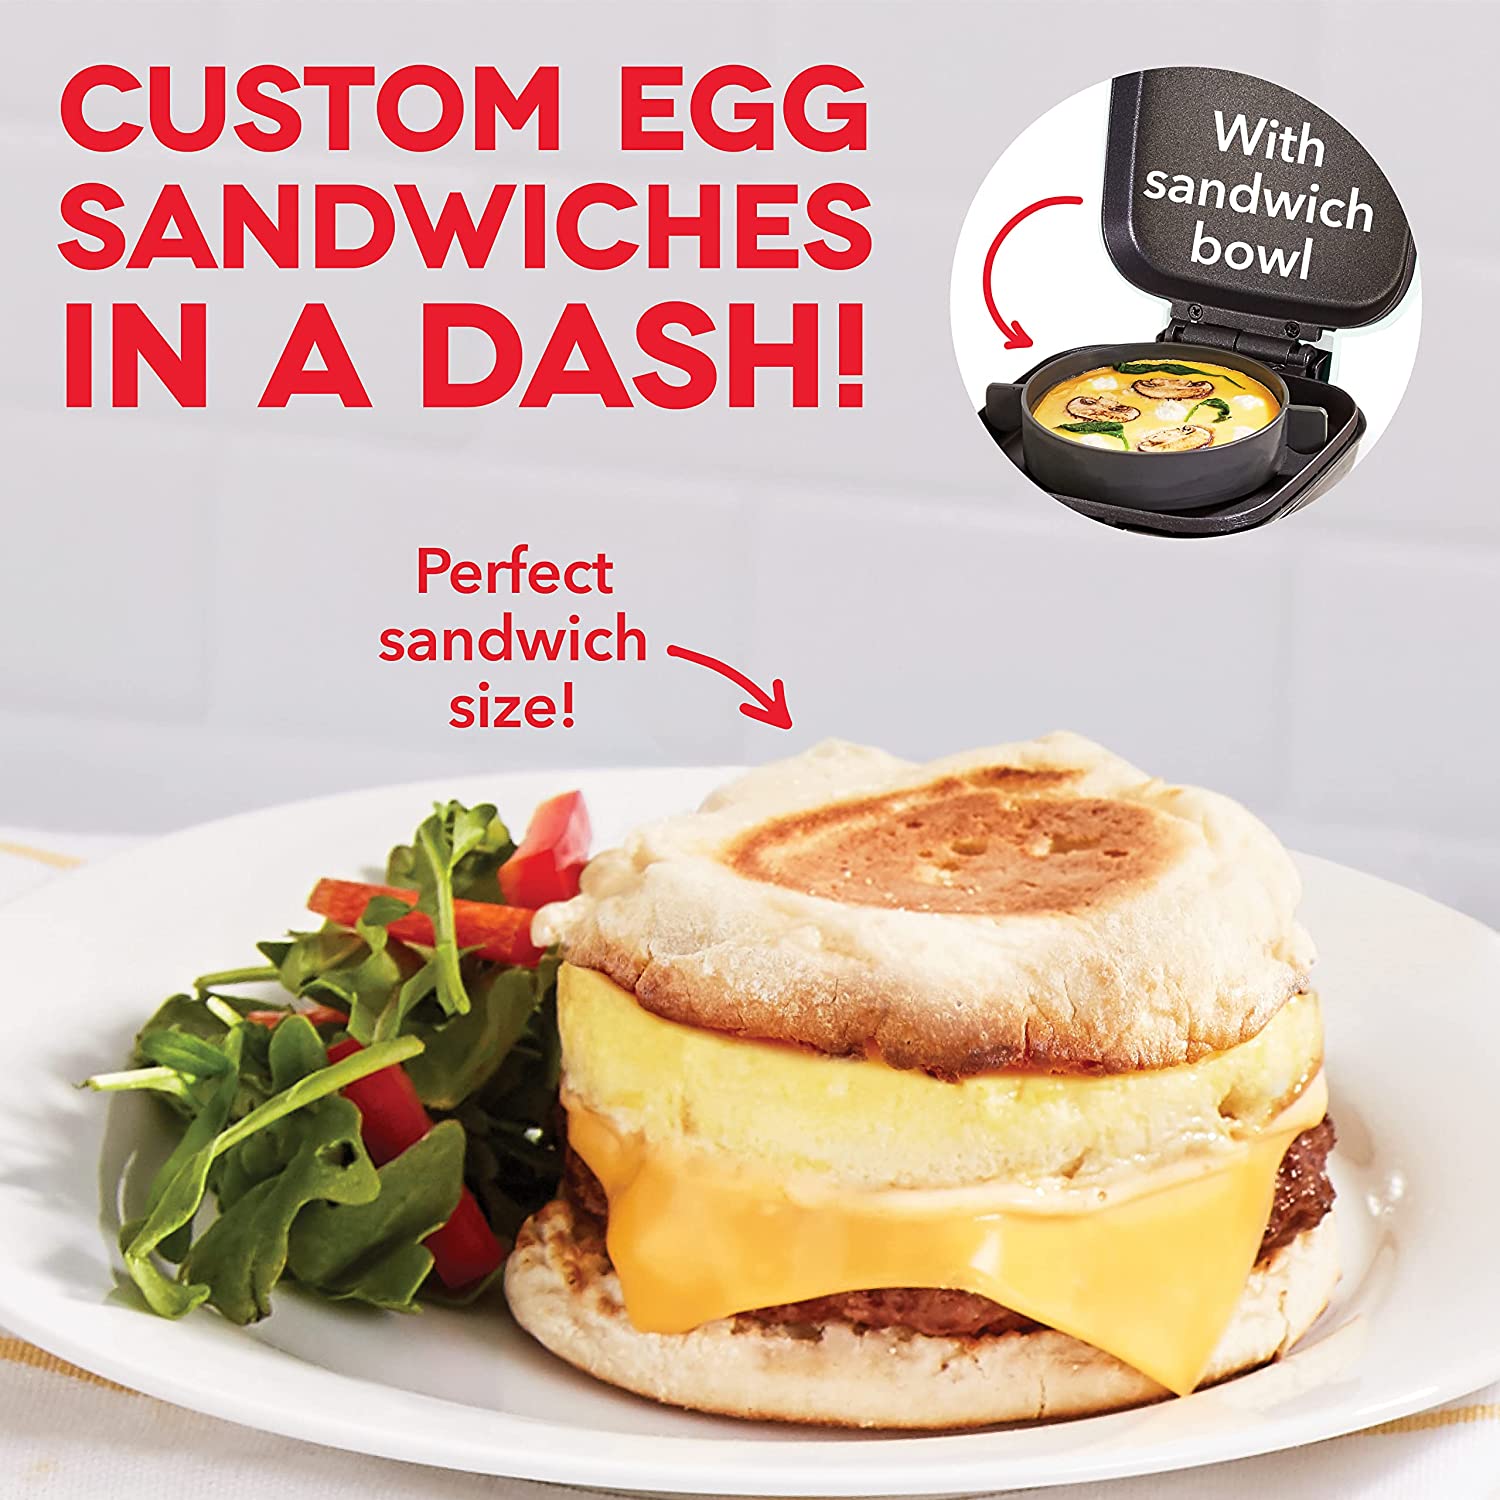 DASH Egg Bite Maker with Recipes 